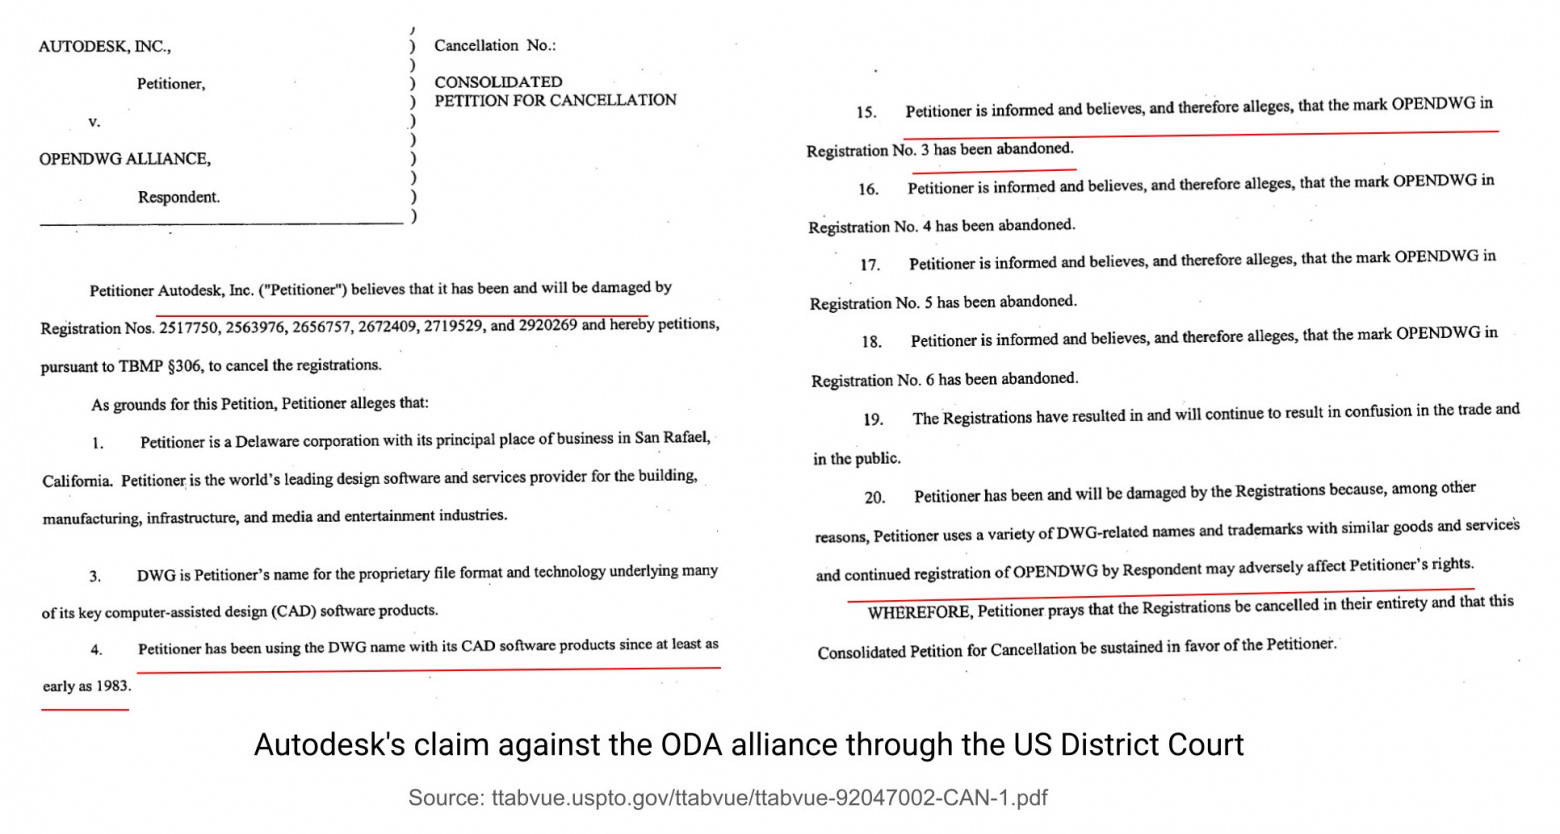 Иск компании Autodesk к альянсу ODA через Американский окружной суд (US District Court)